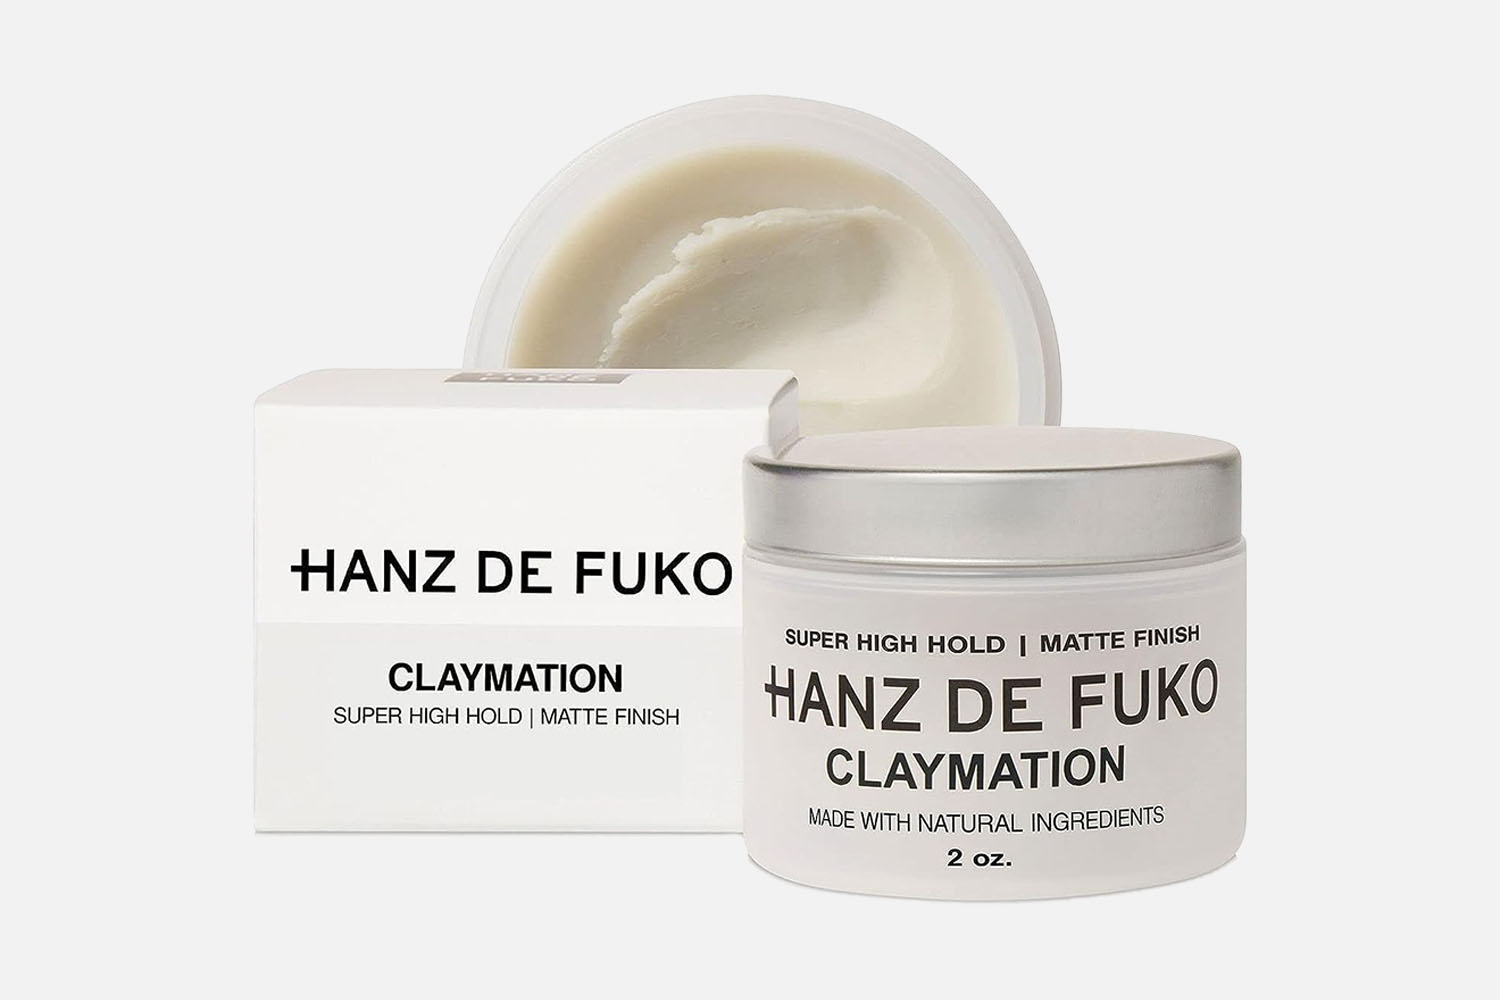 Hanz de Fuko Claymation Premium Styling Clay